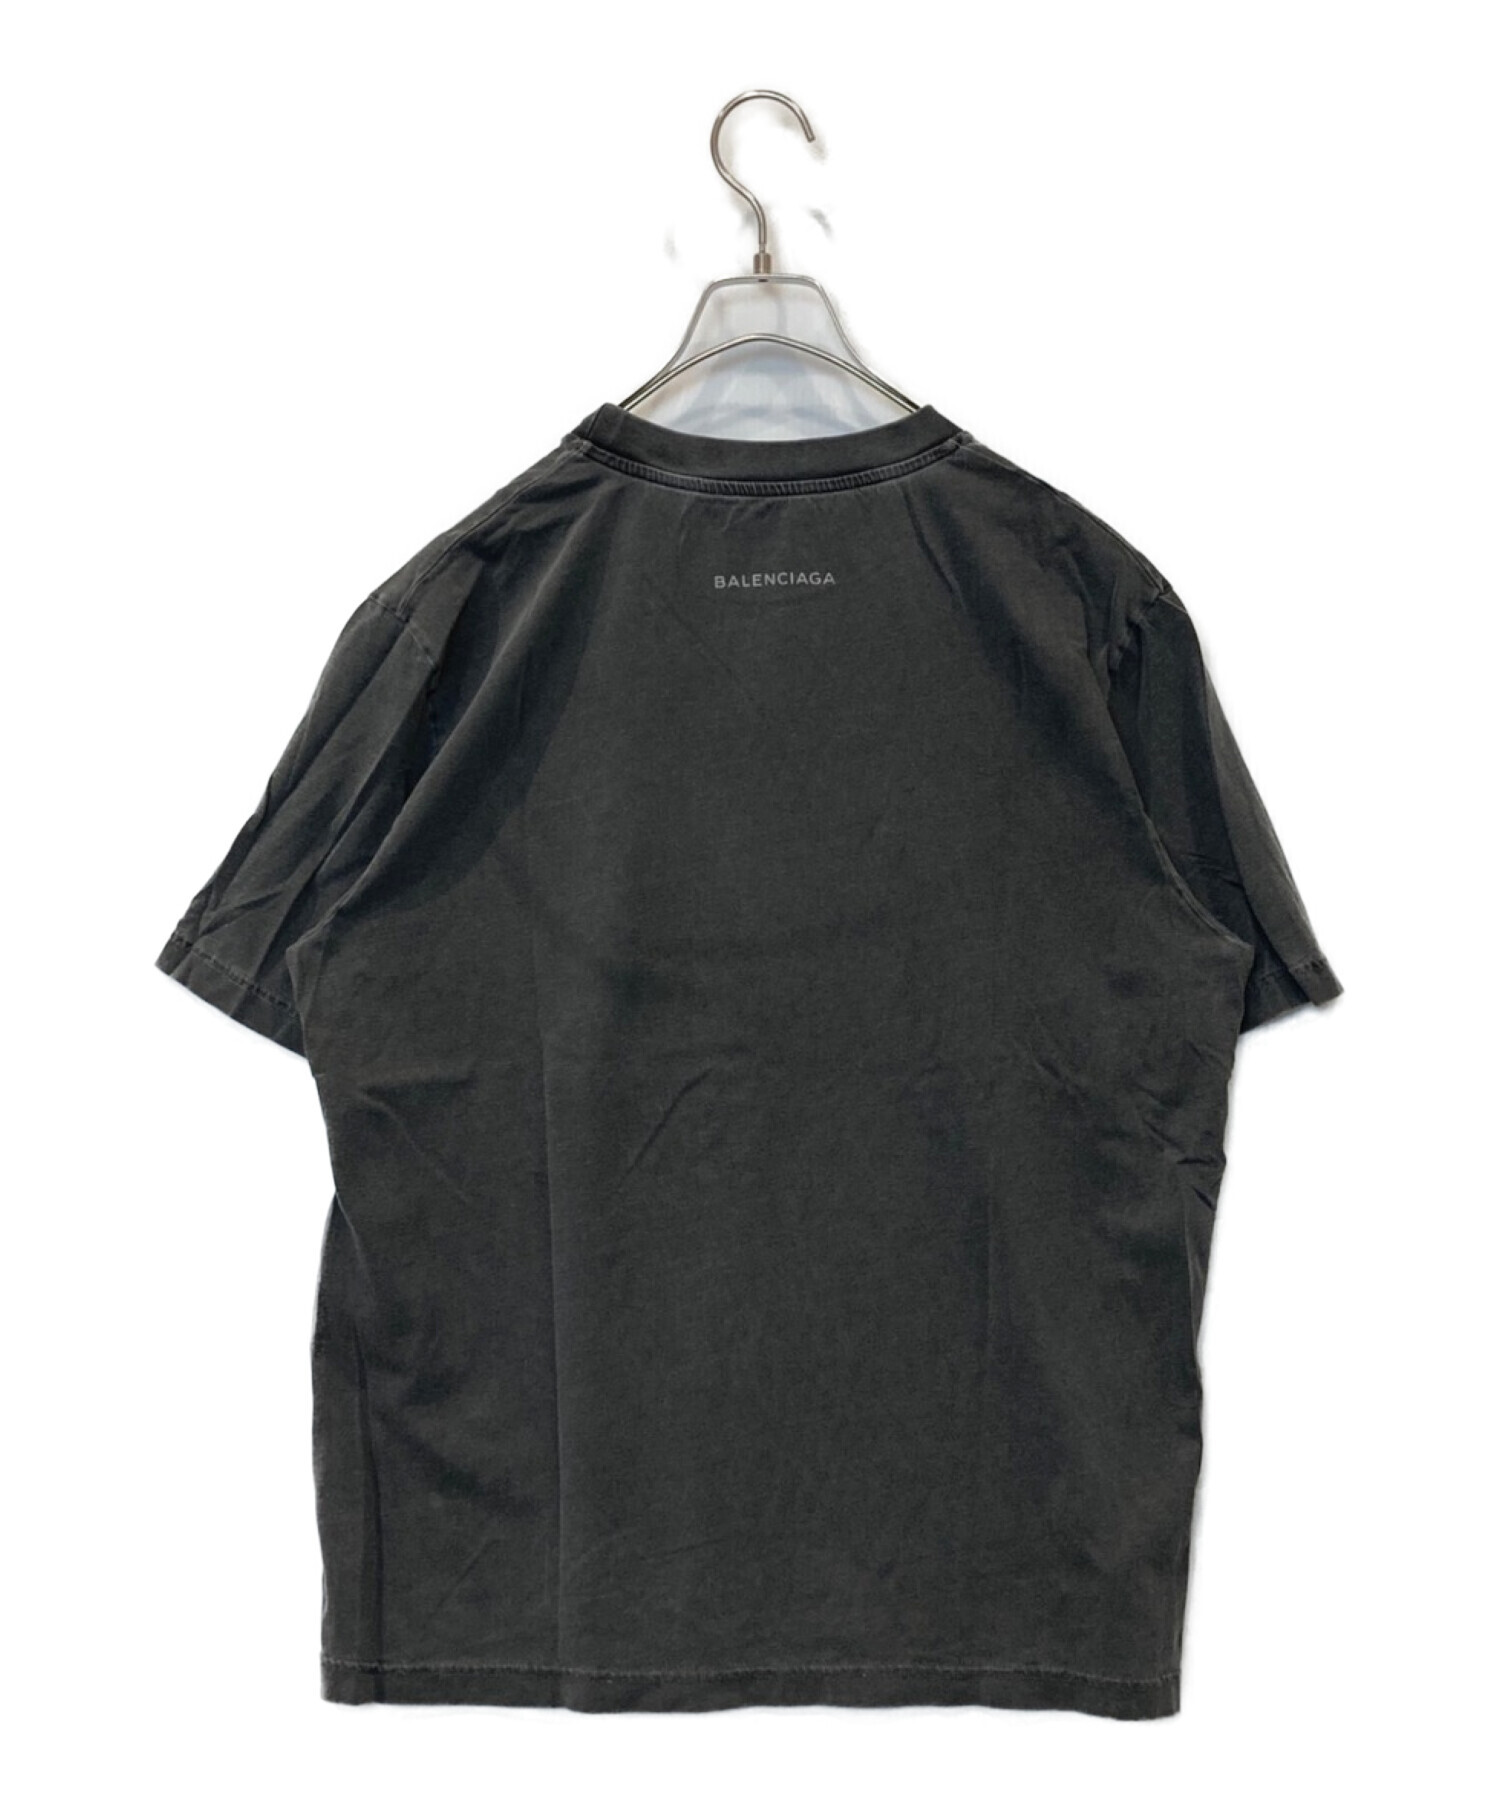 BALENCIAGA (バレンシアガ) Paris ヴィンテージ加工Tシャツ グレー サイズ:XL